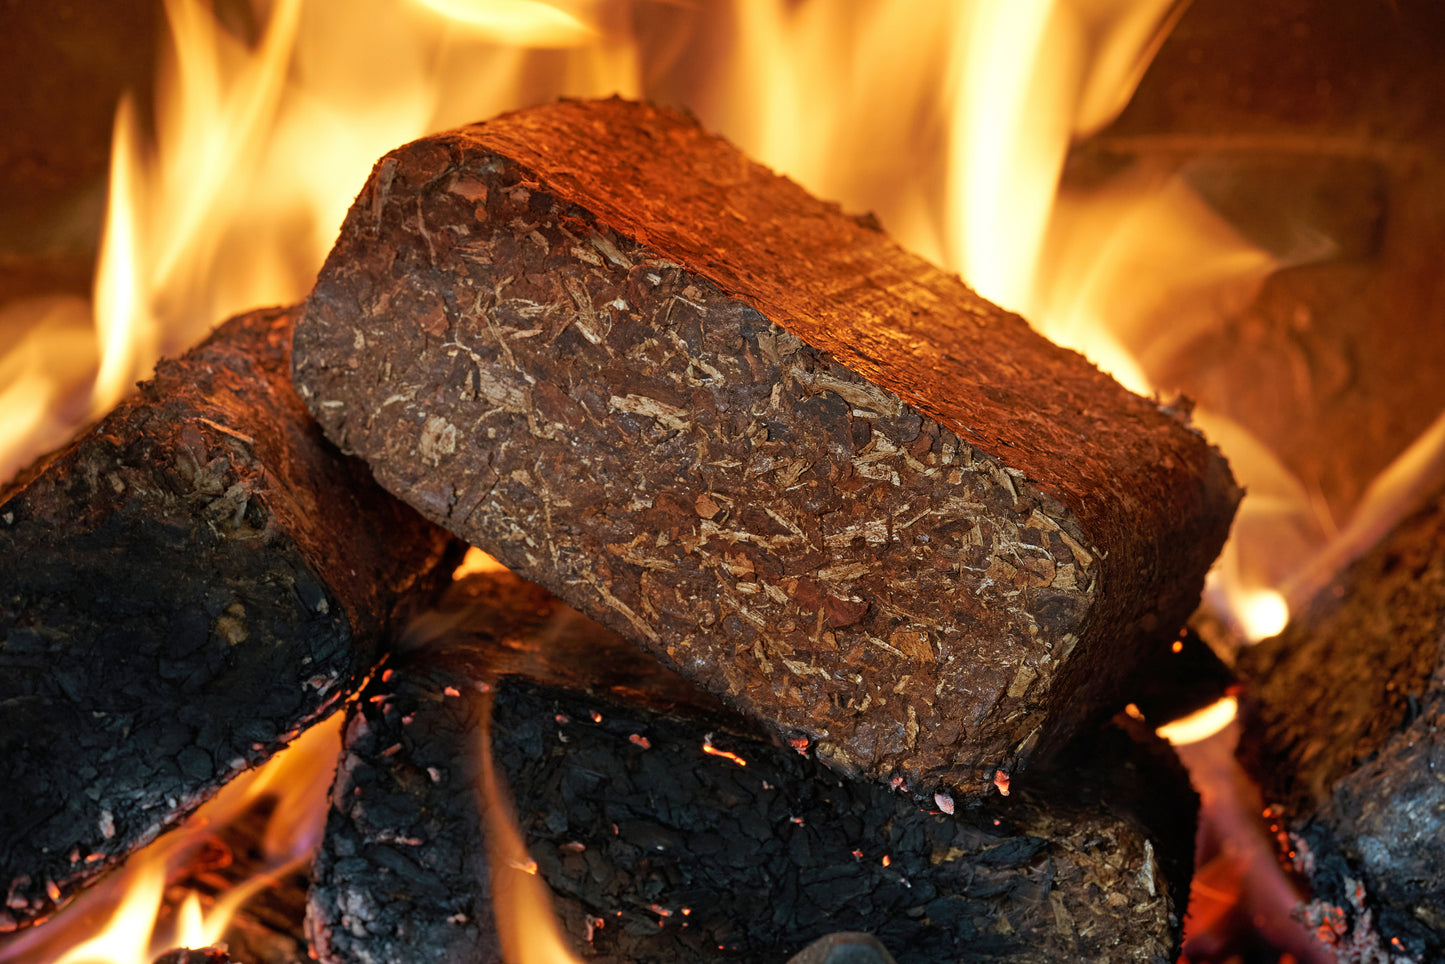 Premium Slow Burn Briquettes – 20KG (20 Briquettes)